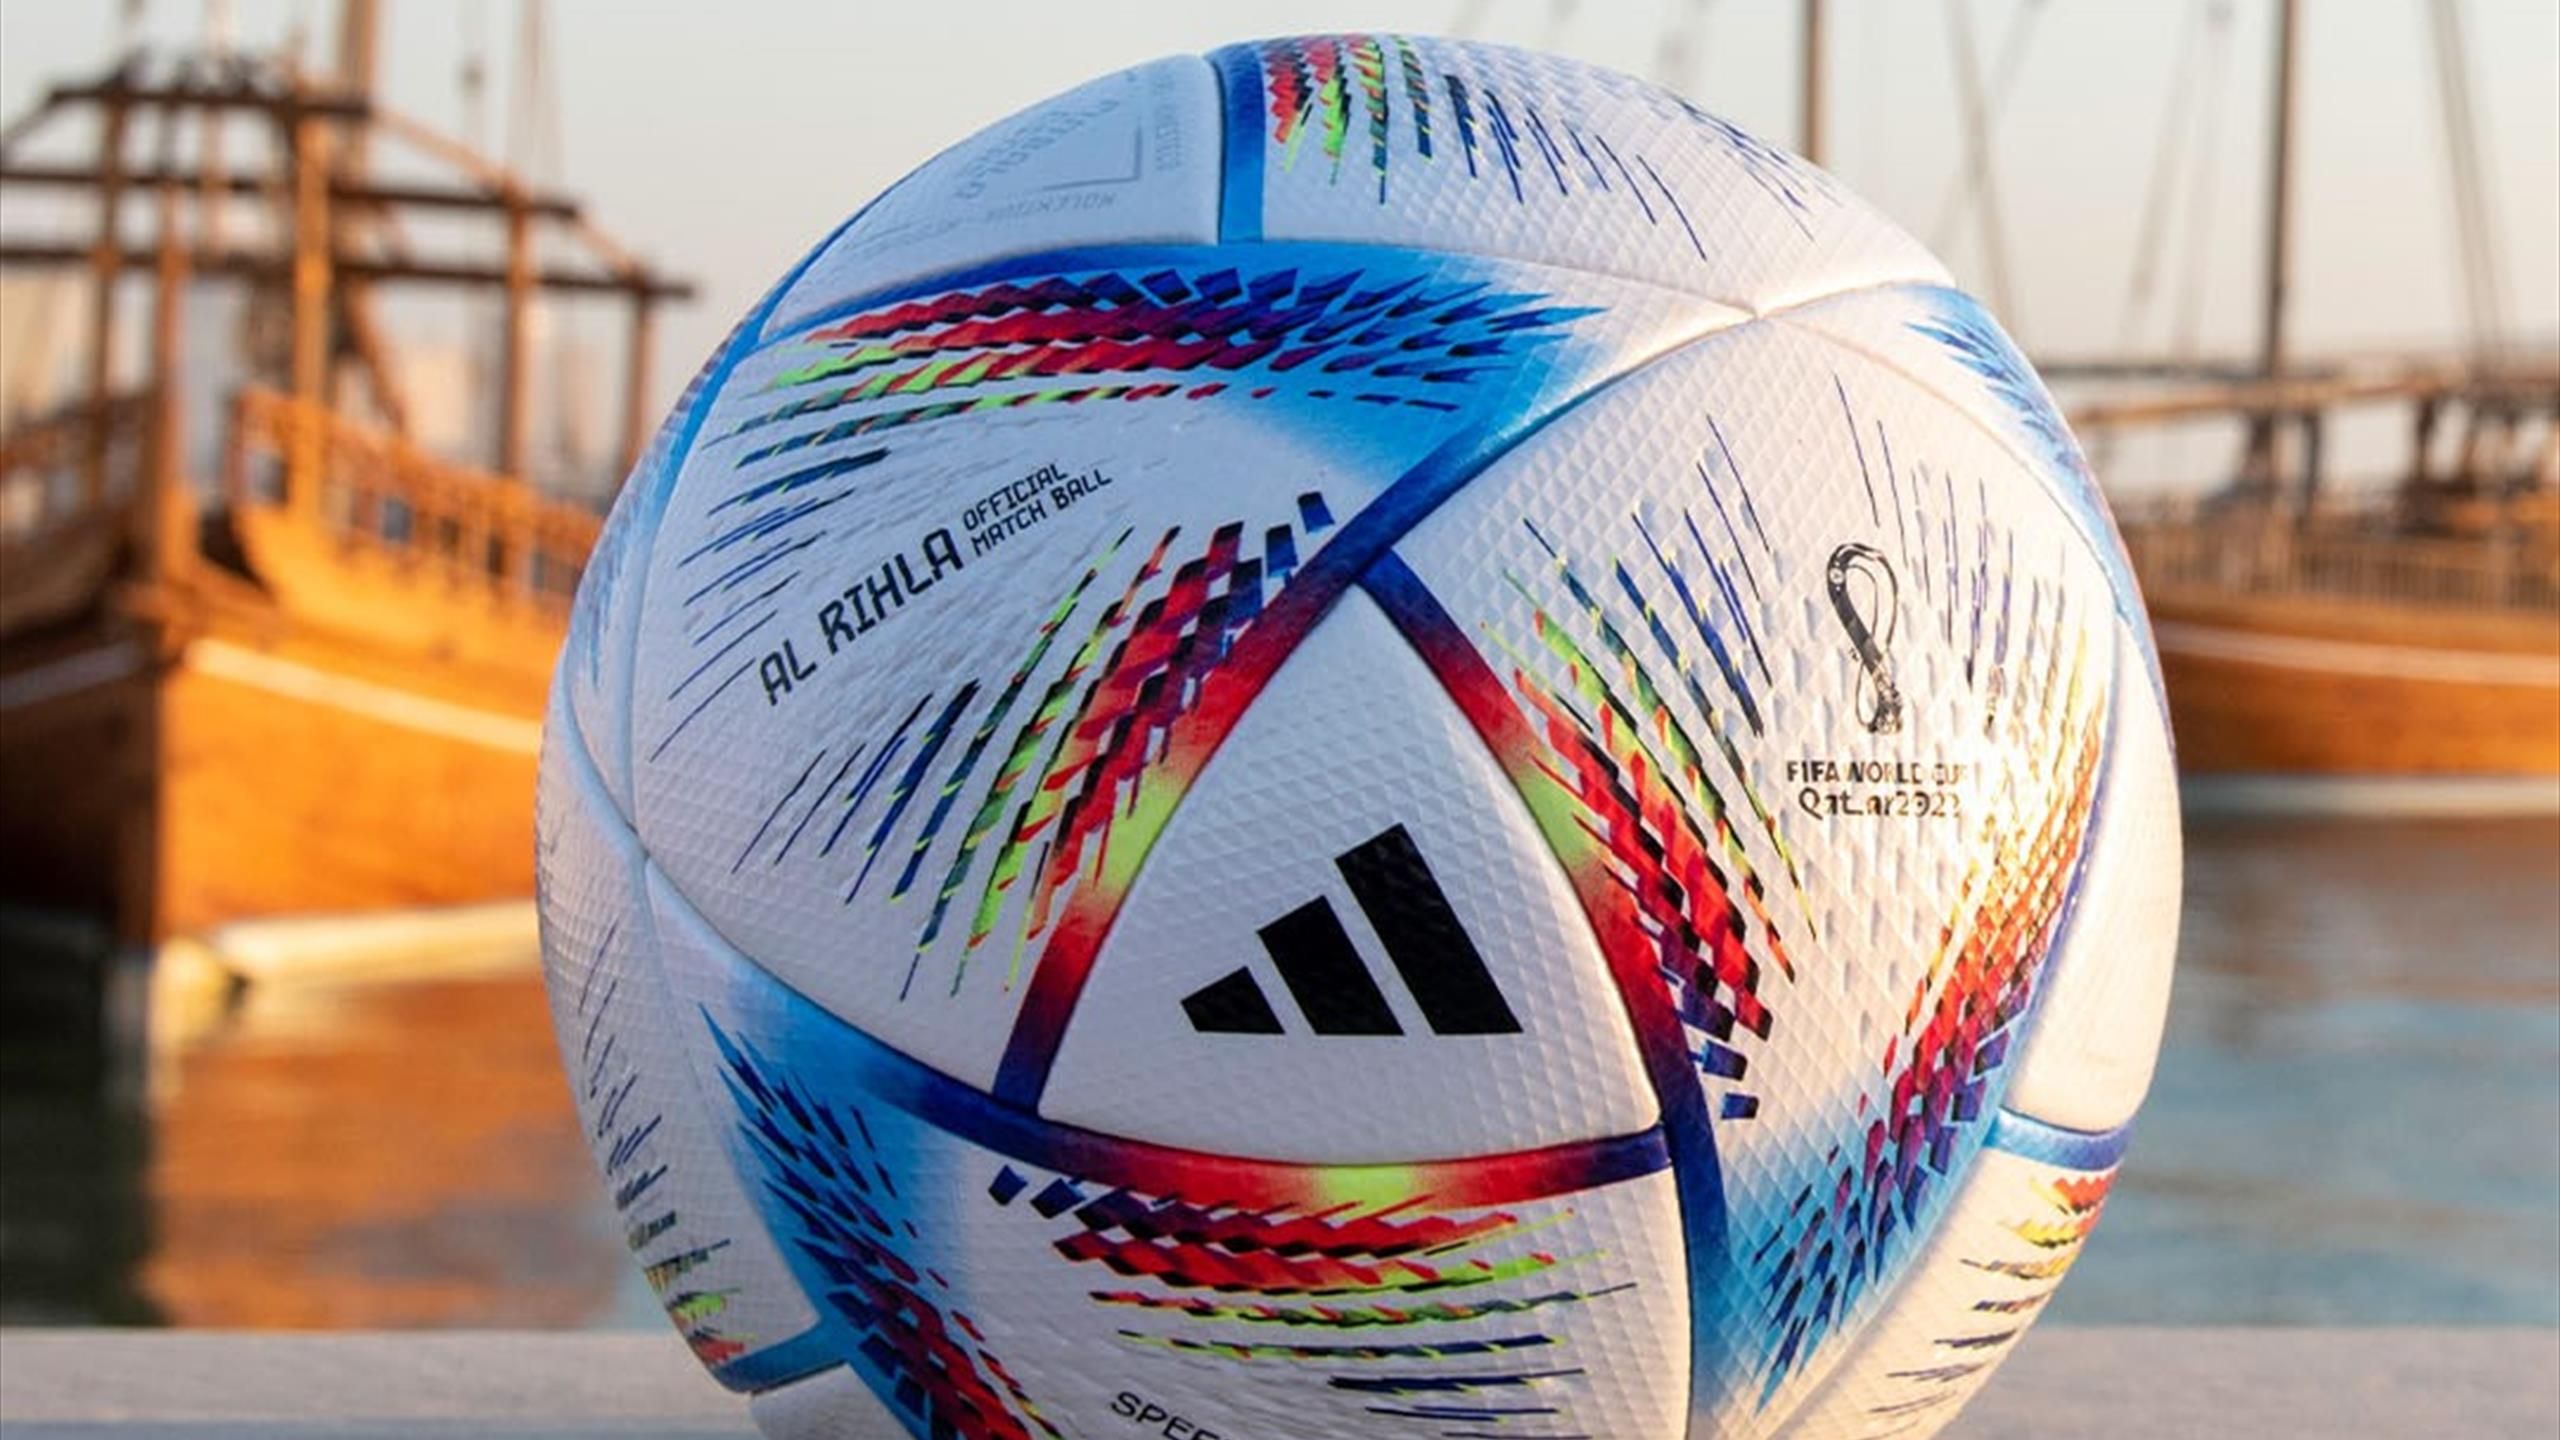 VIDÉO. La FIFA dévoile Al Rihla (le voyage), ballon de la Coupe du monde  2022 au Qatar - Le Parisien